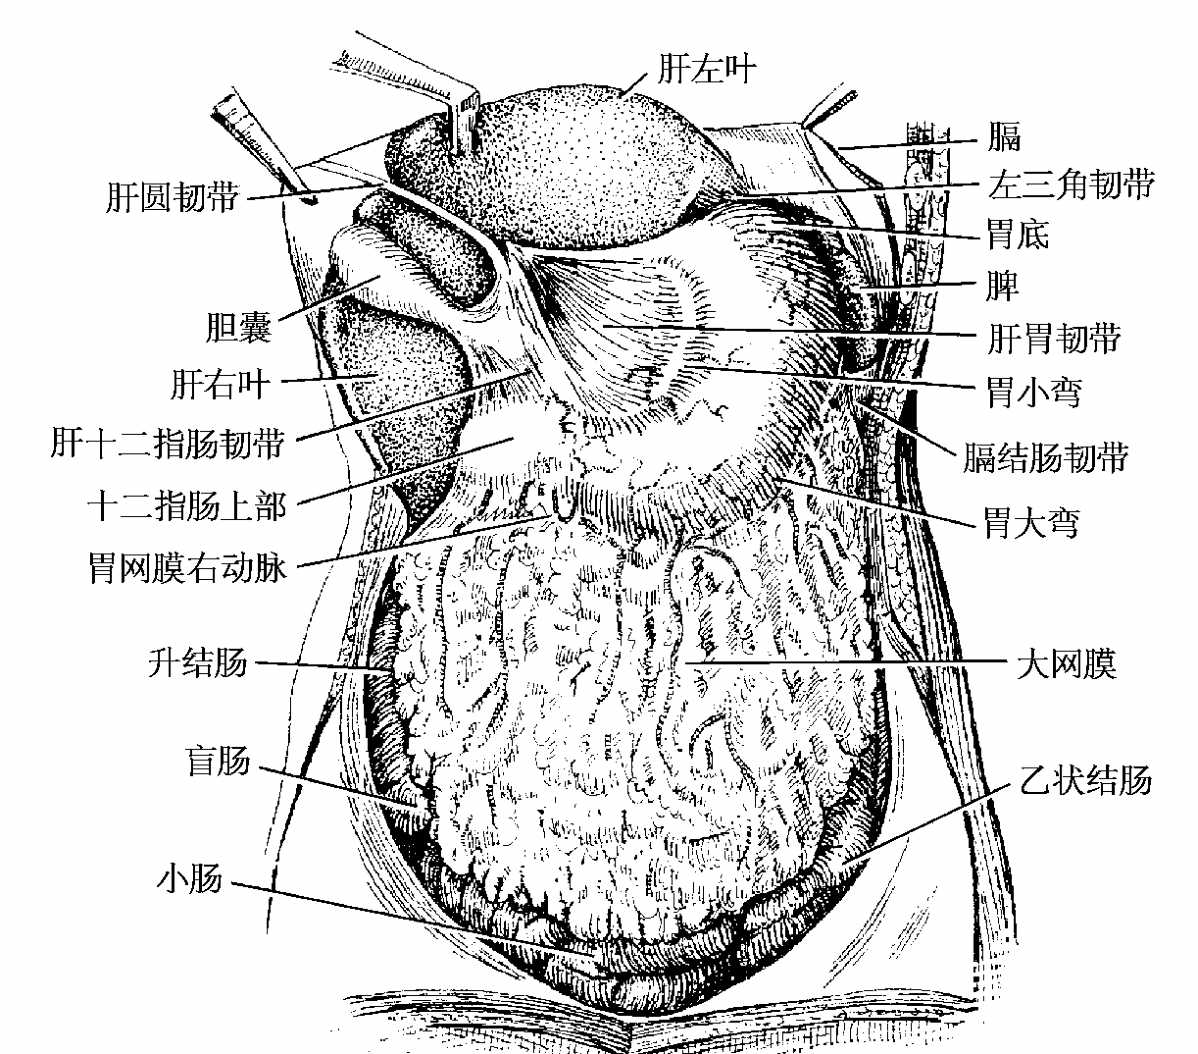 【解剖】腹膜及腹膜腔（经典讲解汇总） - 知乎